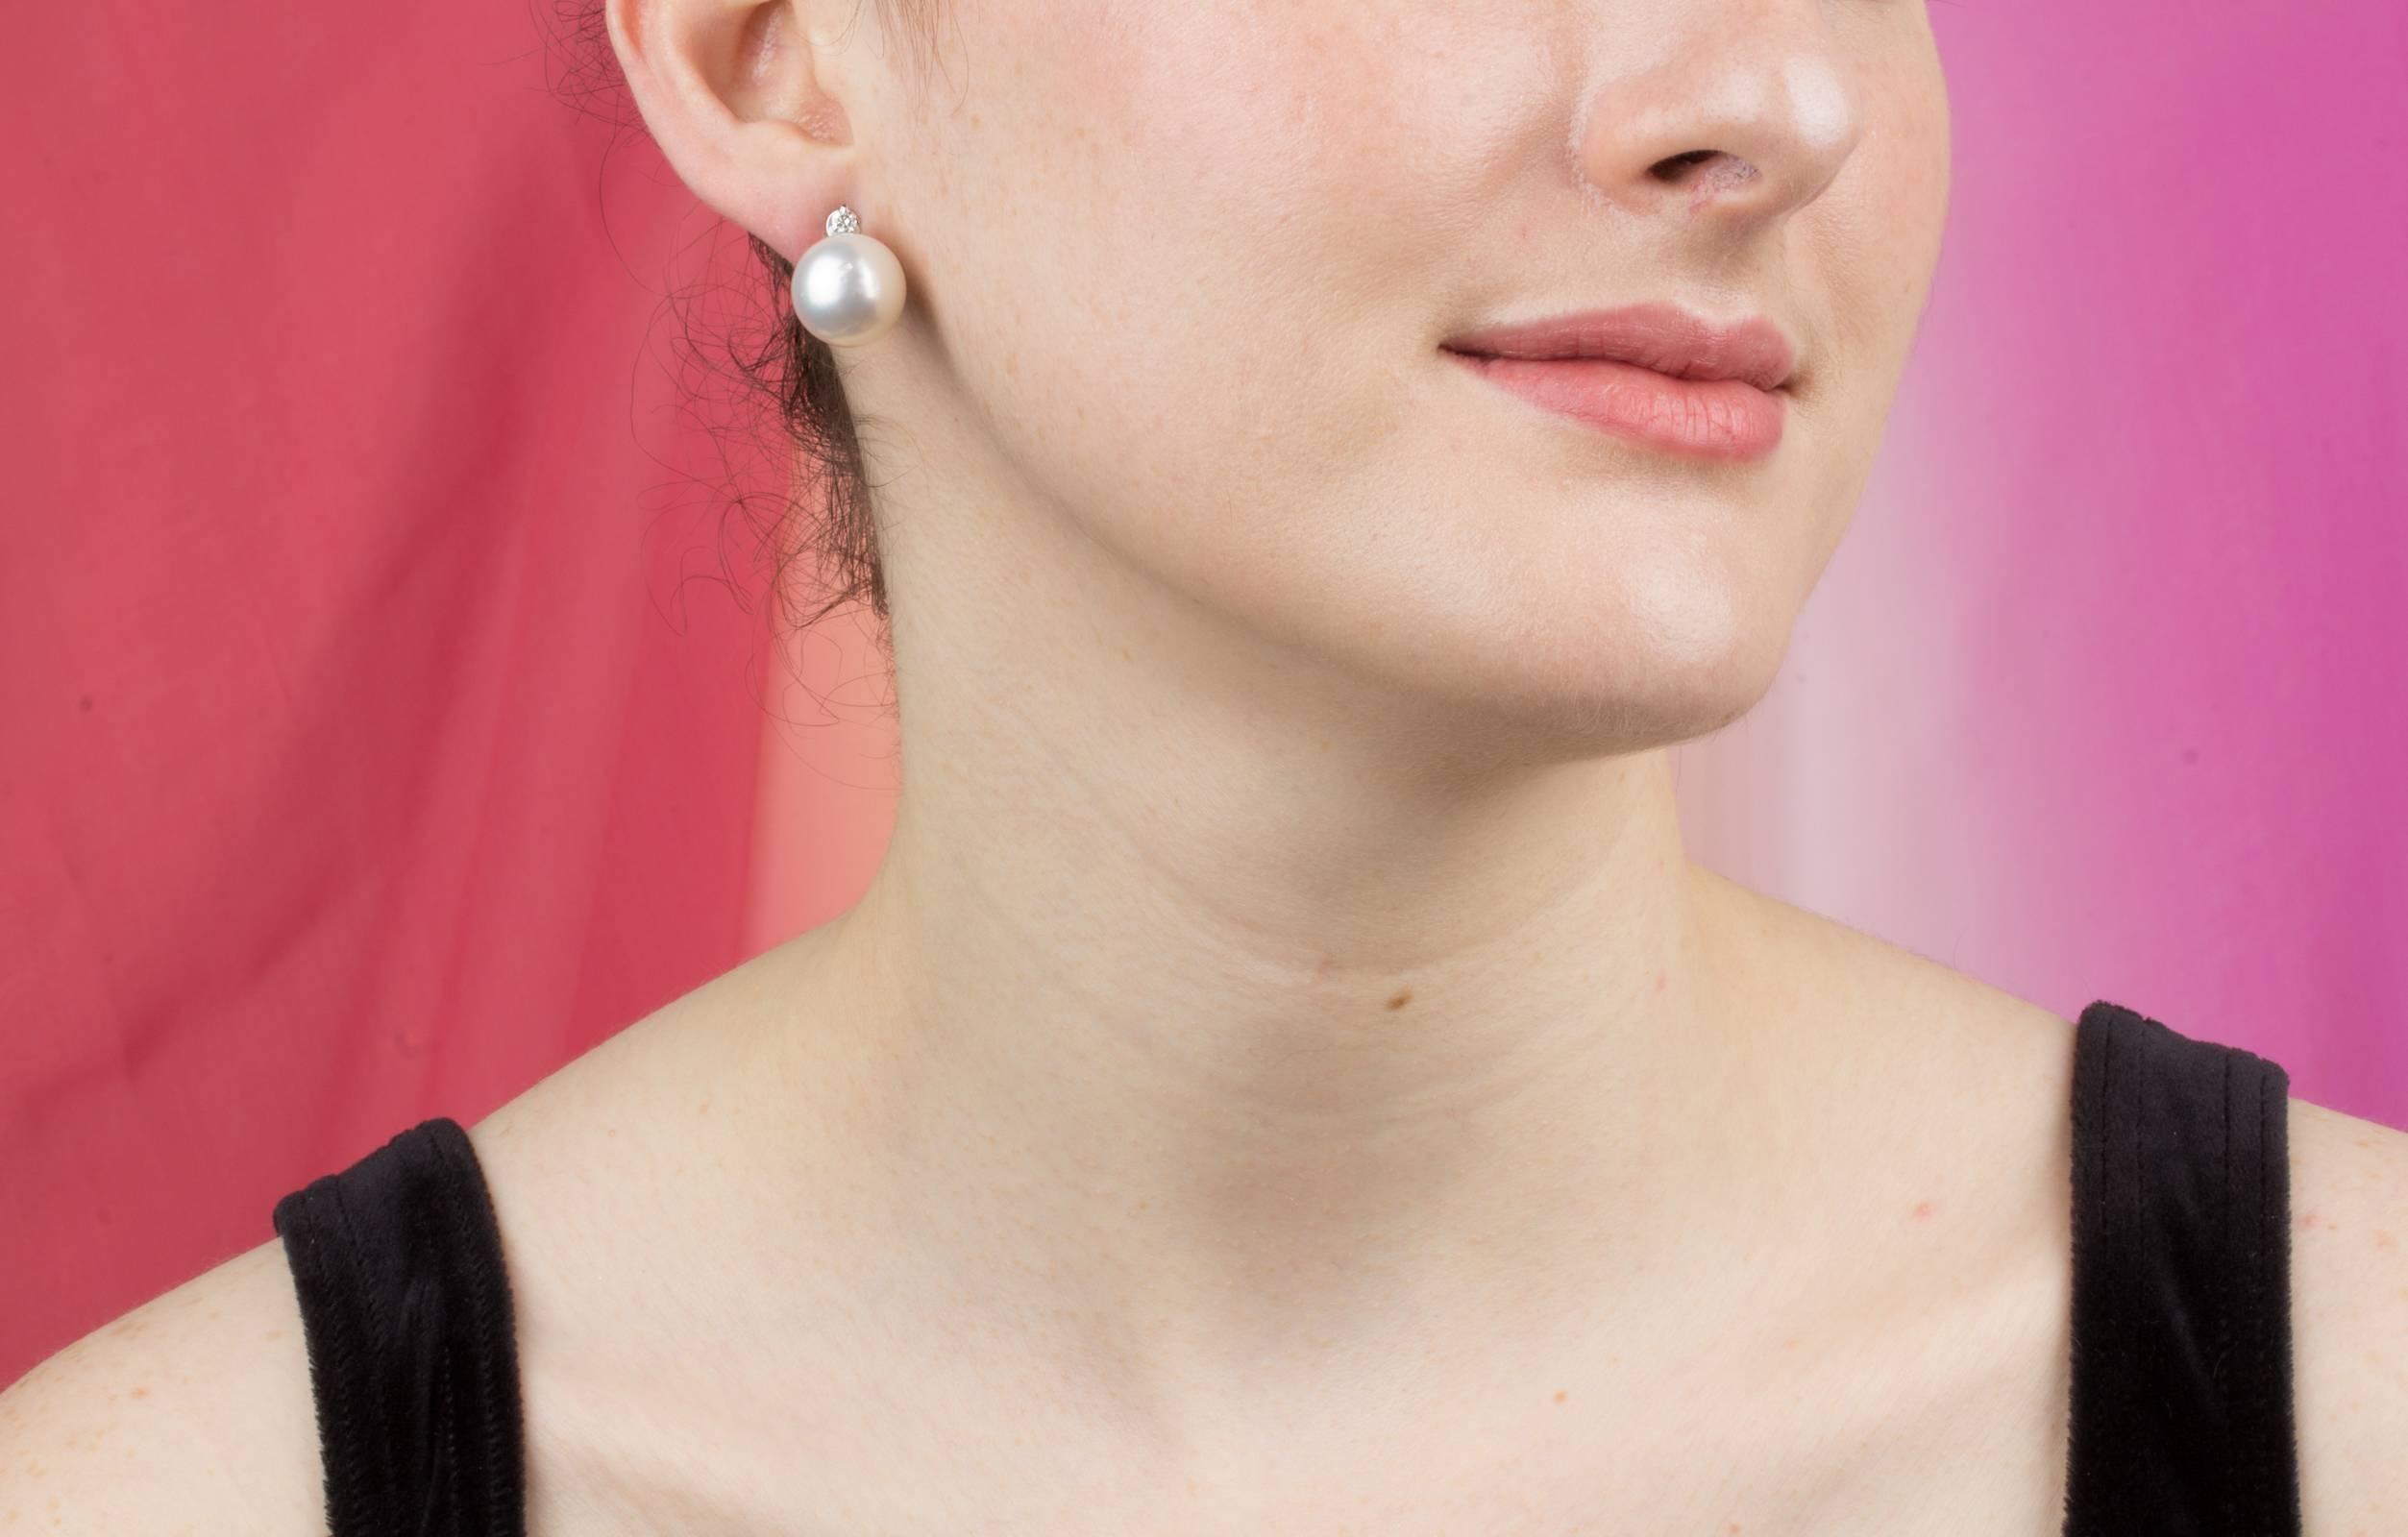 Die Südseeperlen-Ohrstecker bestehen aus zwei Perlen mit einem Durchmesser von 14,5 mm aus den Gewässern im Nordwesten Australiens. Das Design ist mit 2 Diamanten (0,16 Karat) besetzt.
Alle unsere Perlen sind unbehandelt: Ihre natürliche Farbe und